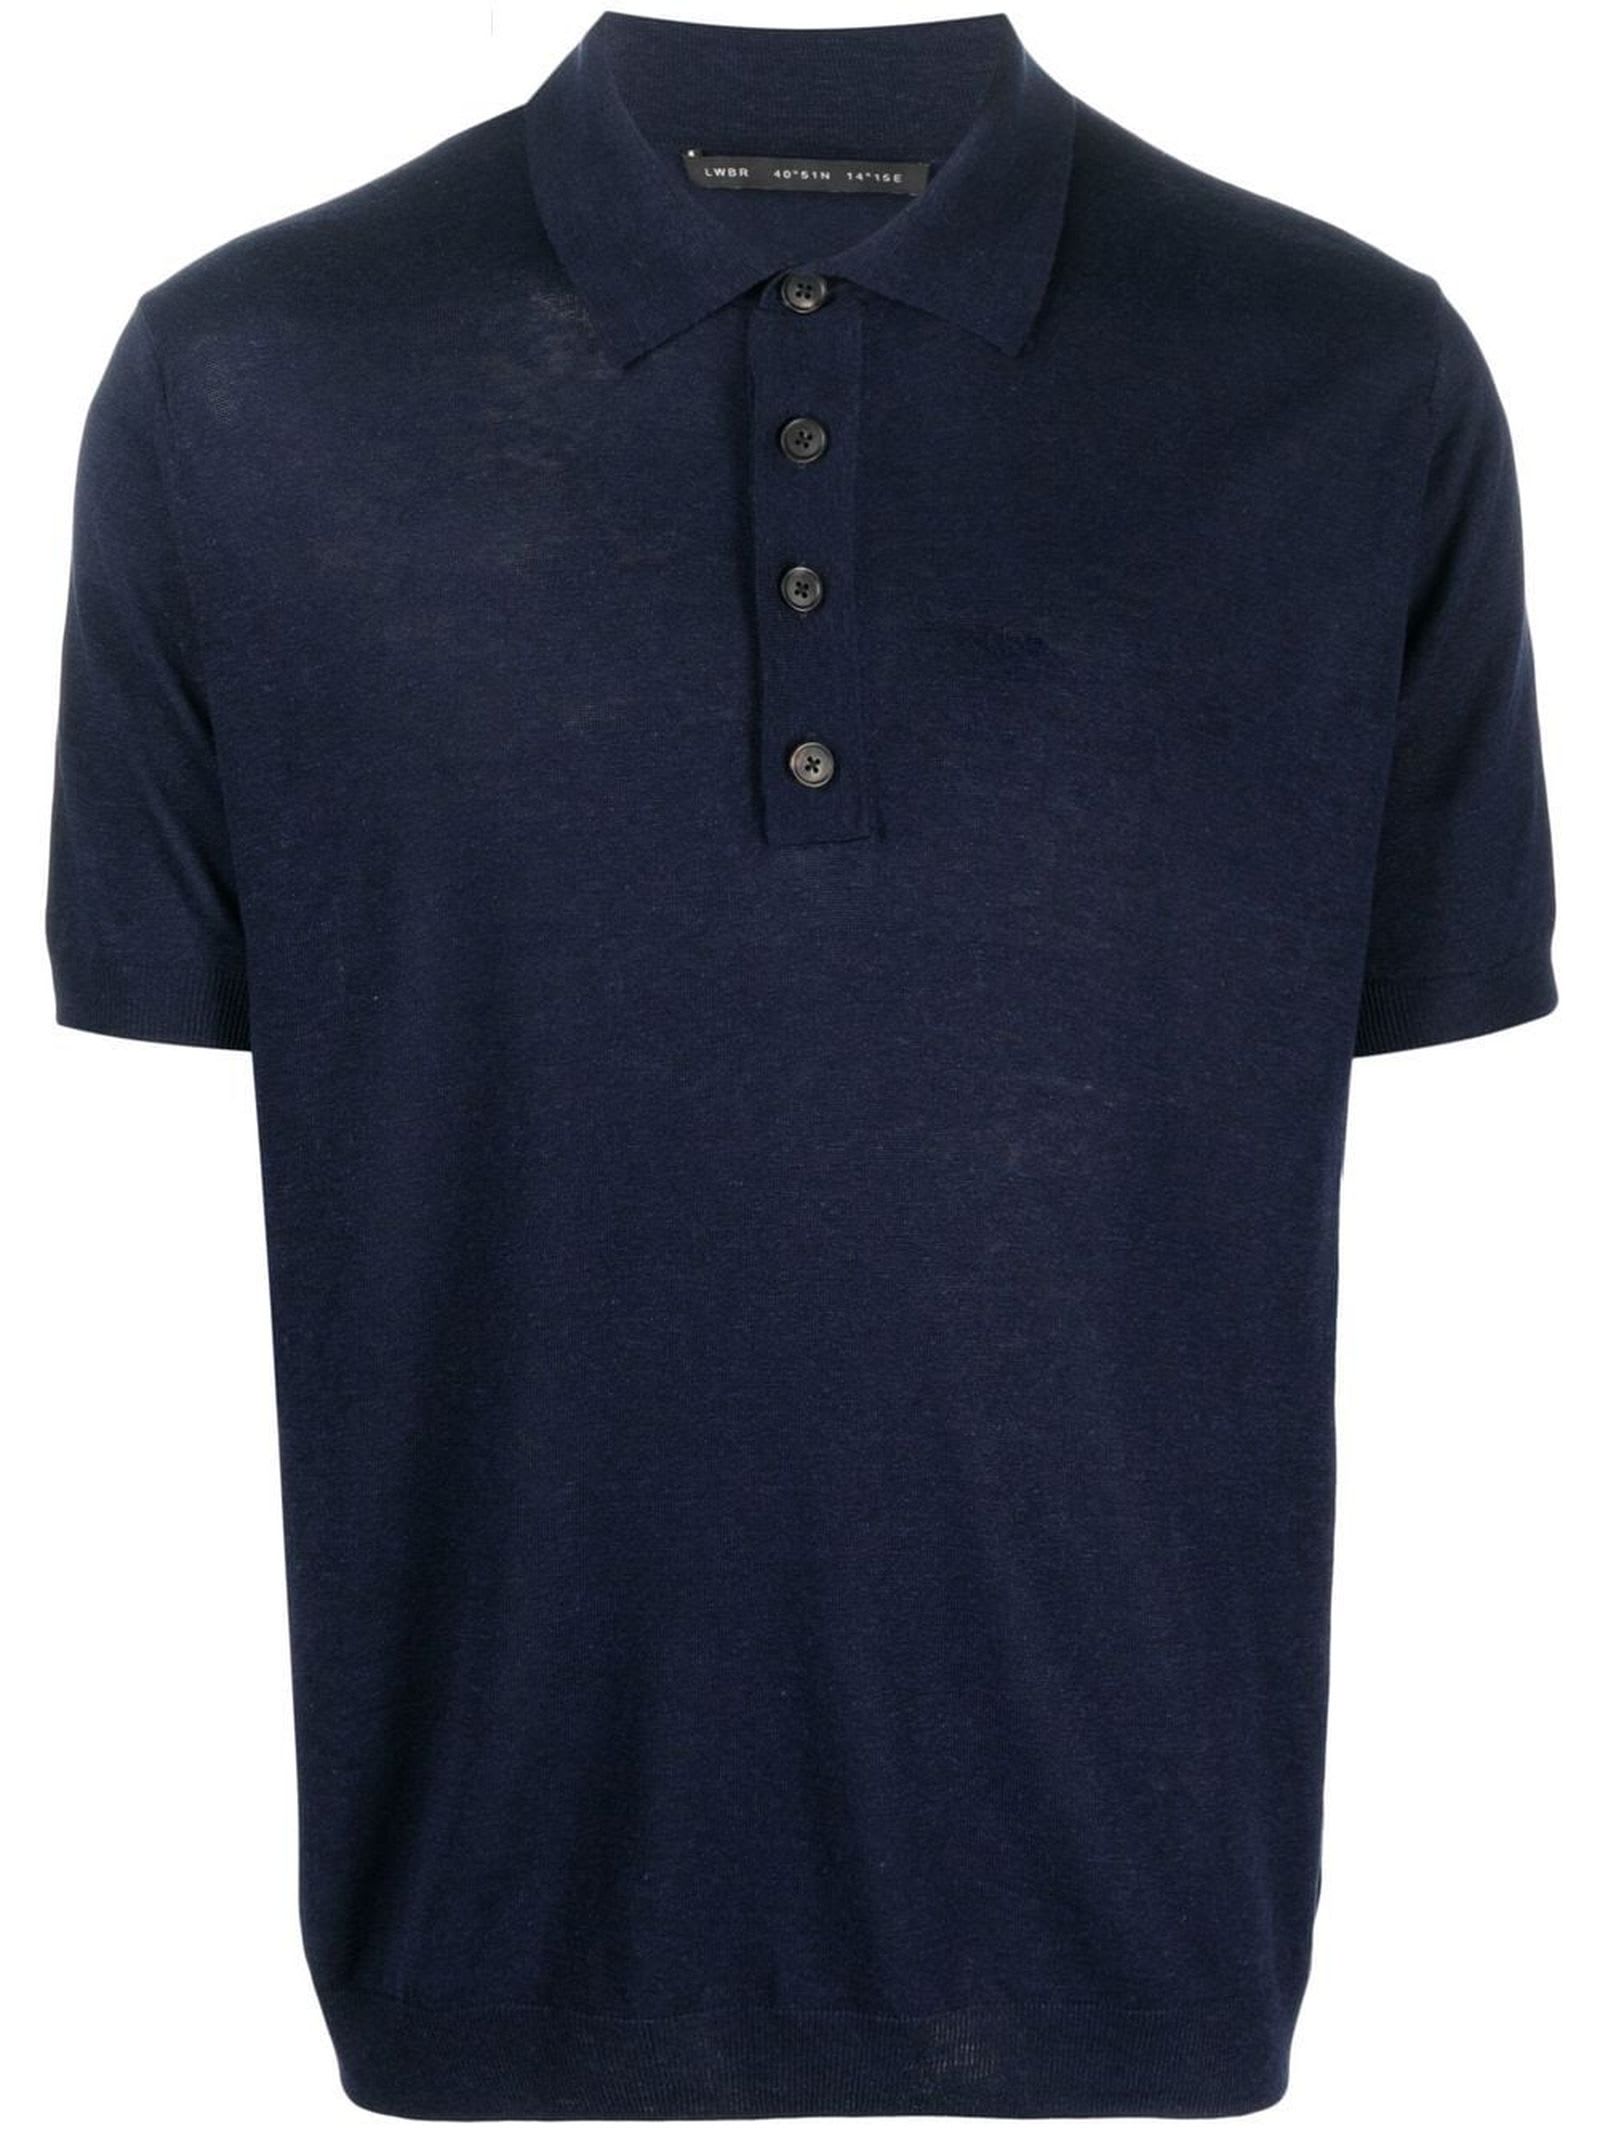 Low Brand Navy Blue Silk-linen Blend Polo Shirt